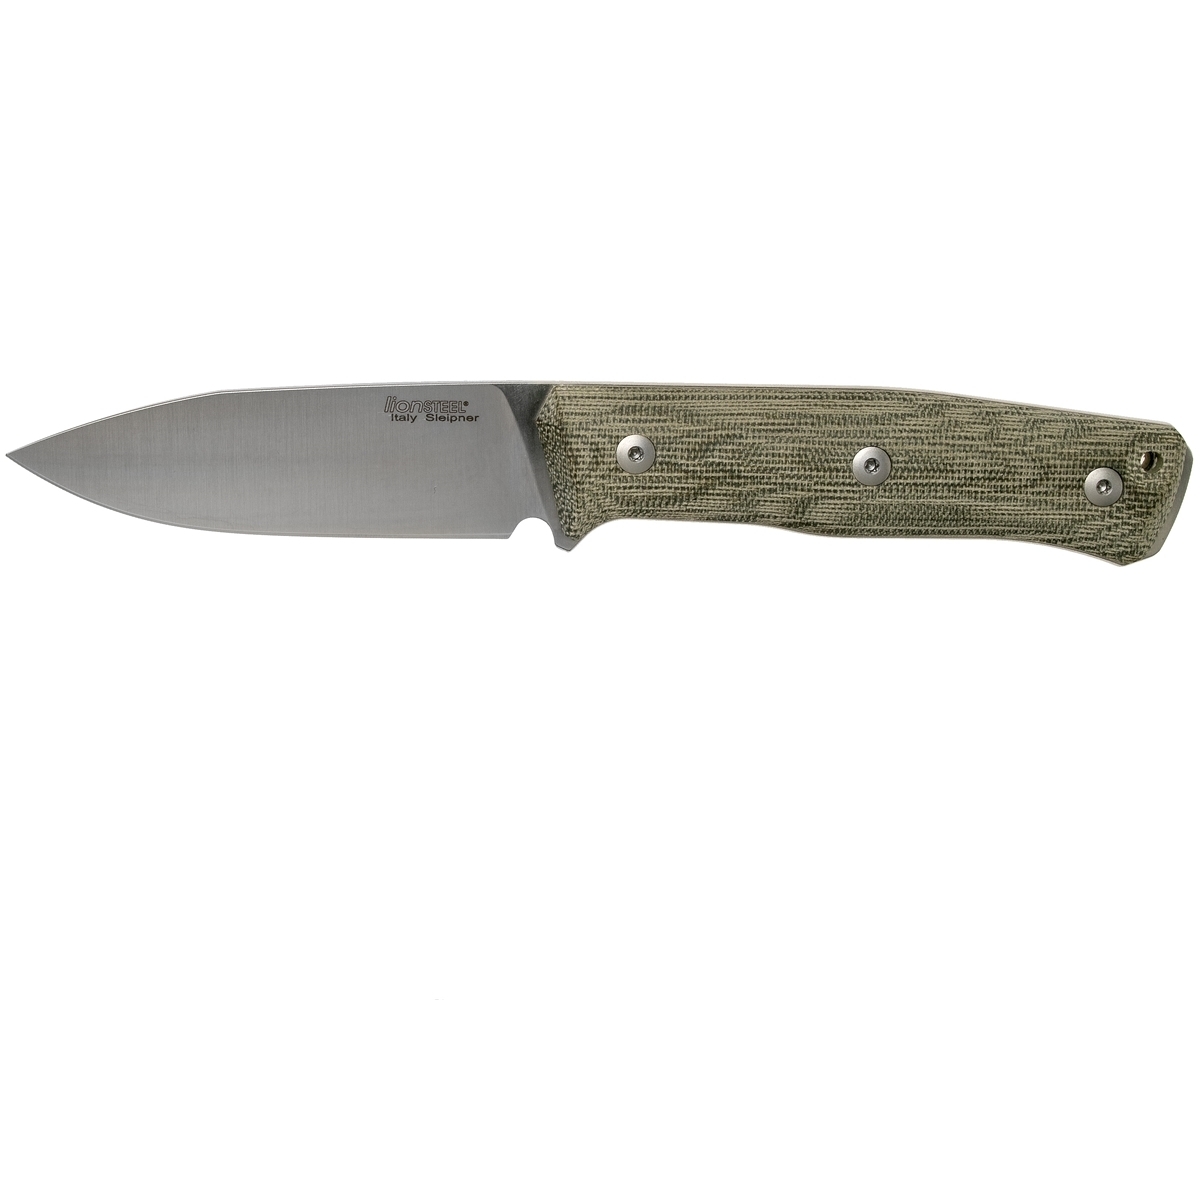 фото Нож с фиксированным клинком lionsteel b35, сталь sleipner, рукоять green canvas micarta lion steel